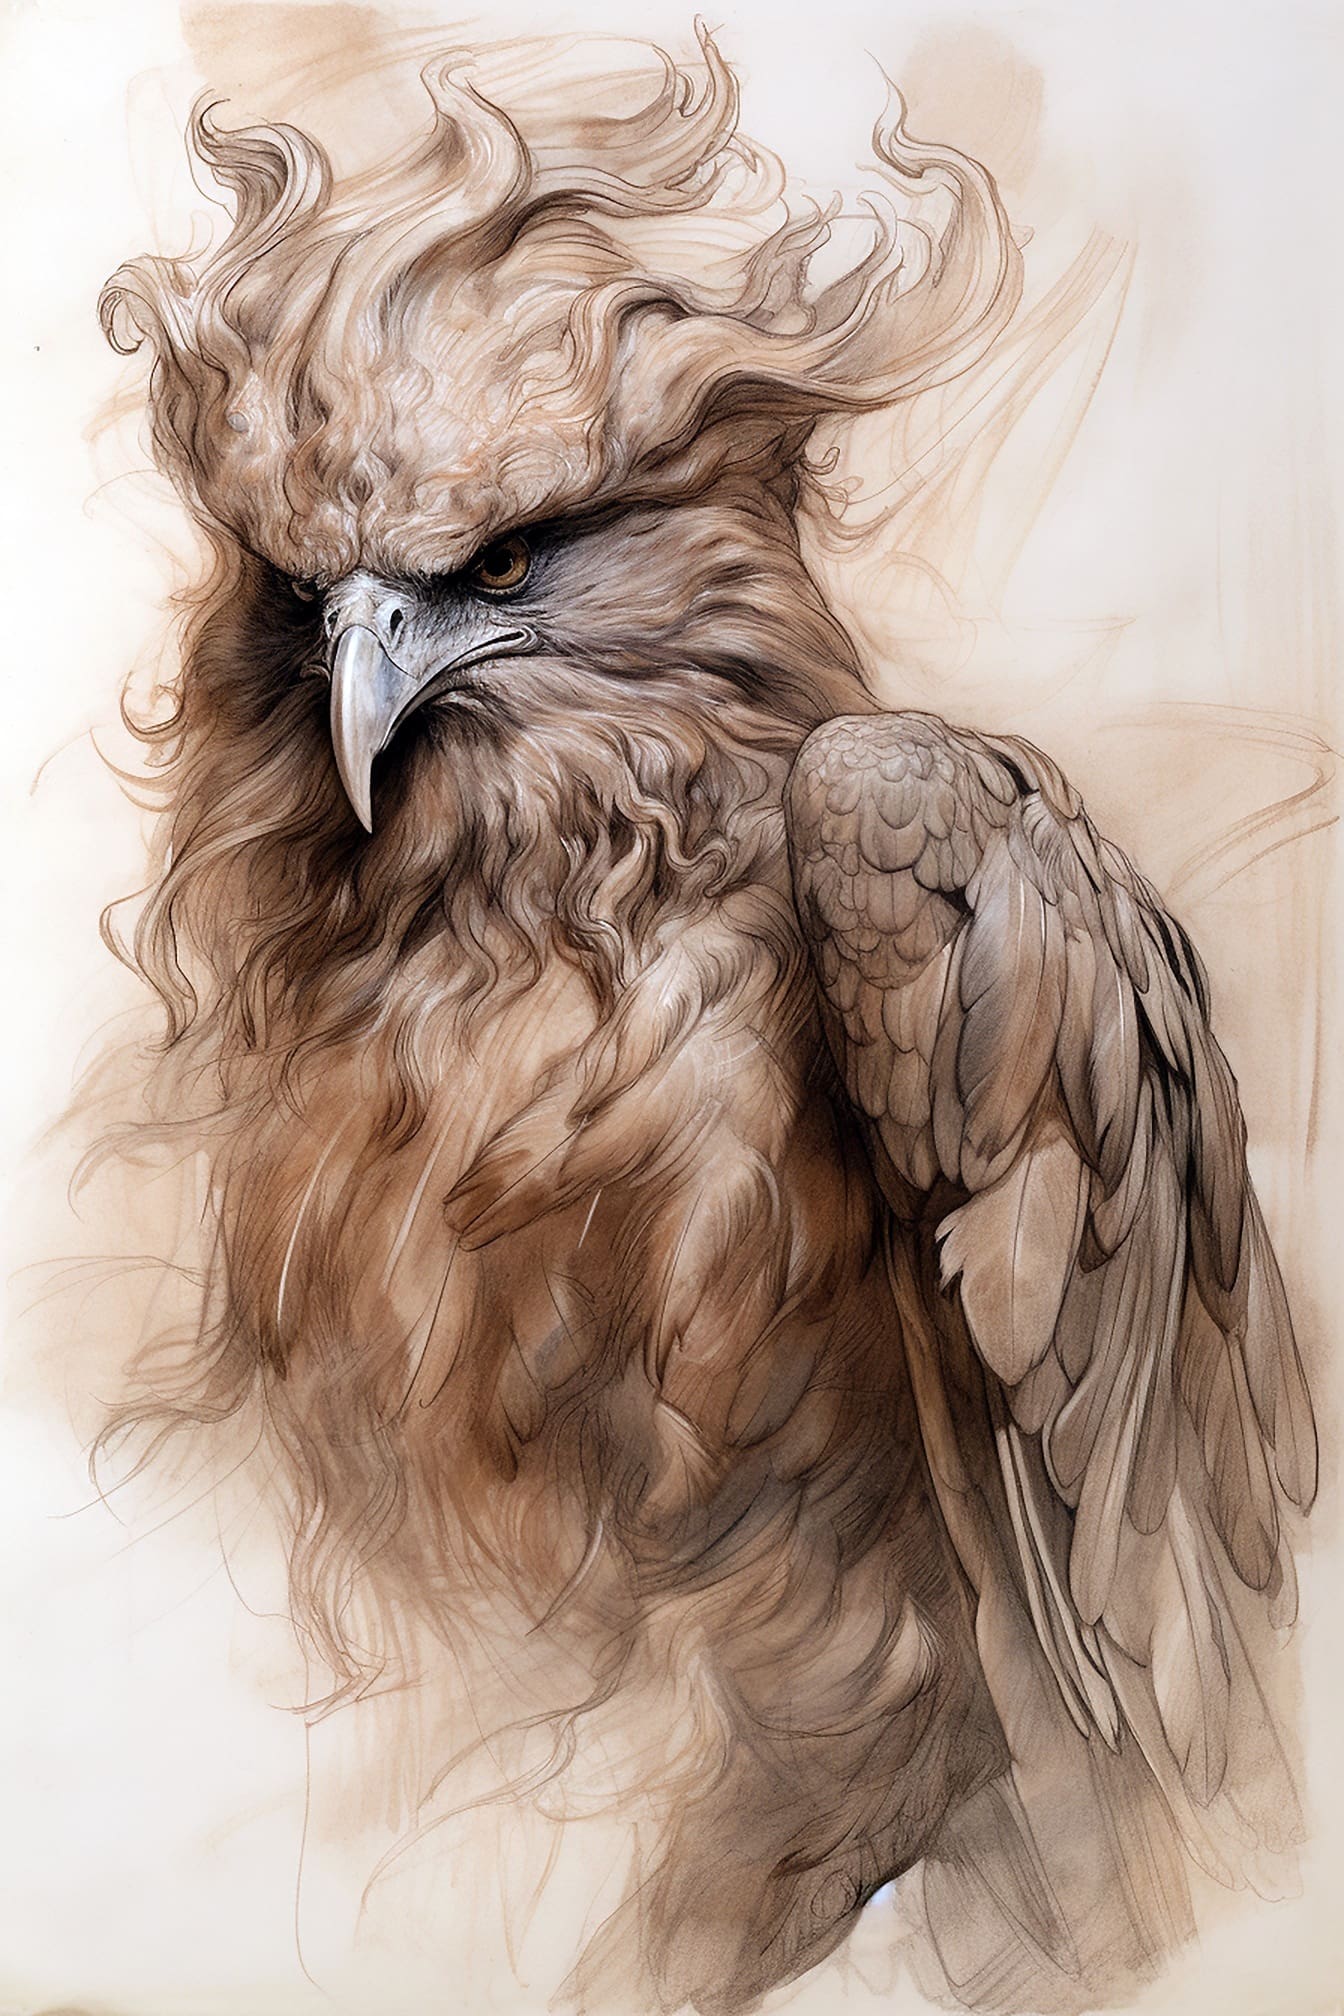 Umjetnički crtež ptica predatora svijetlo smeđe boje